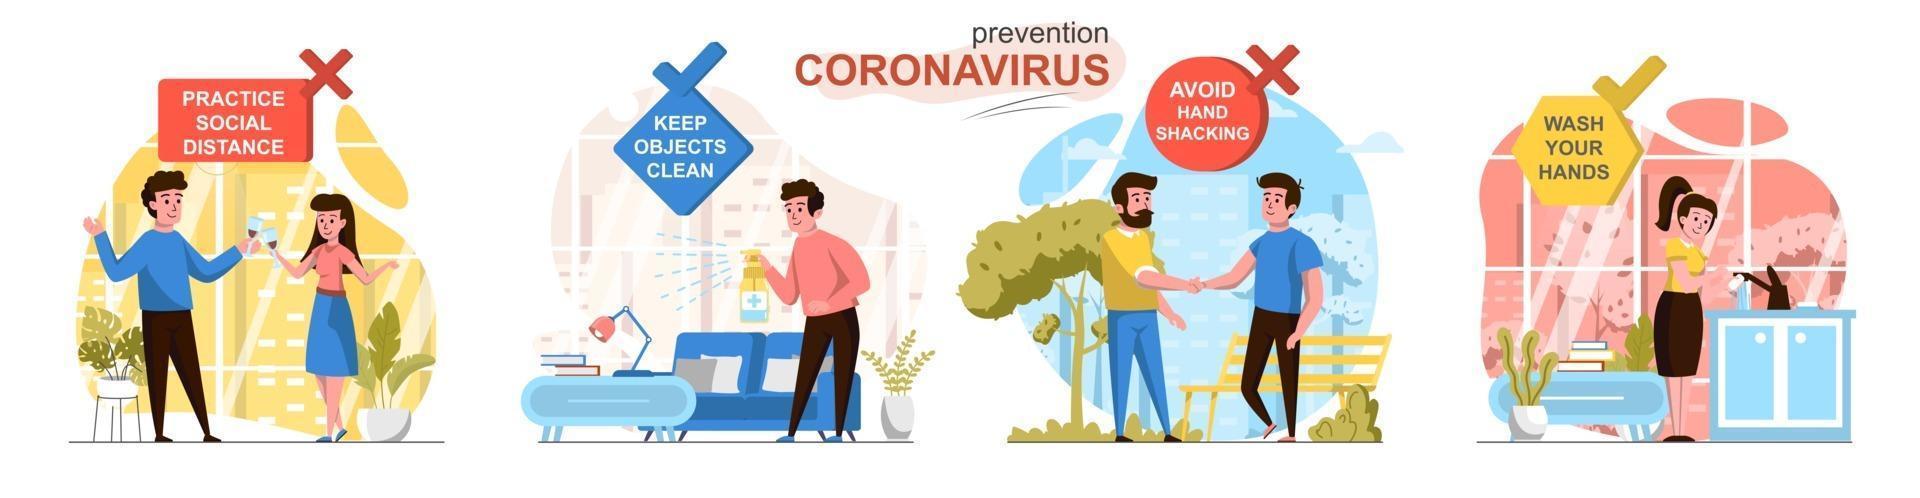 prevenzione scene concettuali di design piatto coronavirus vettore